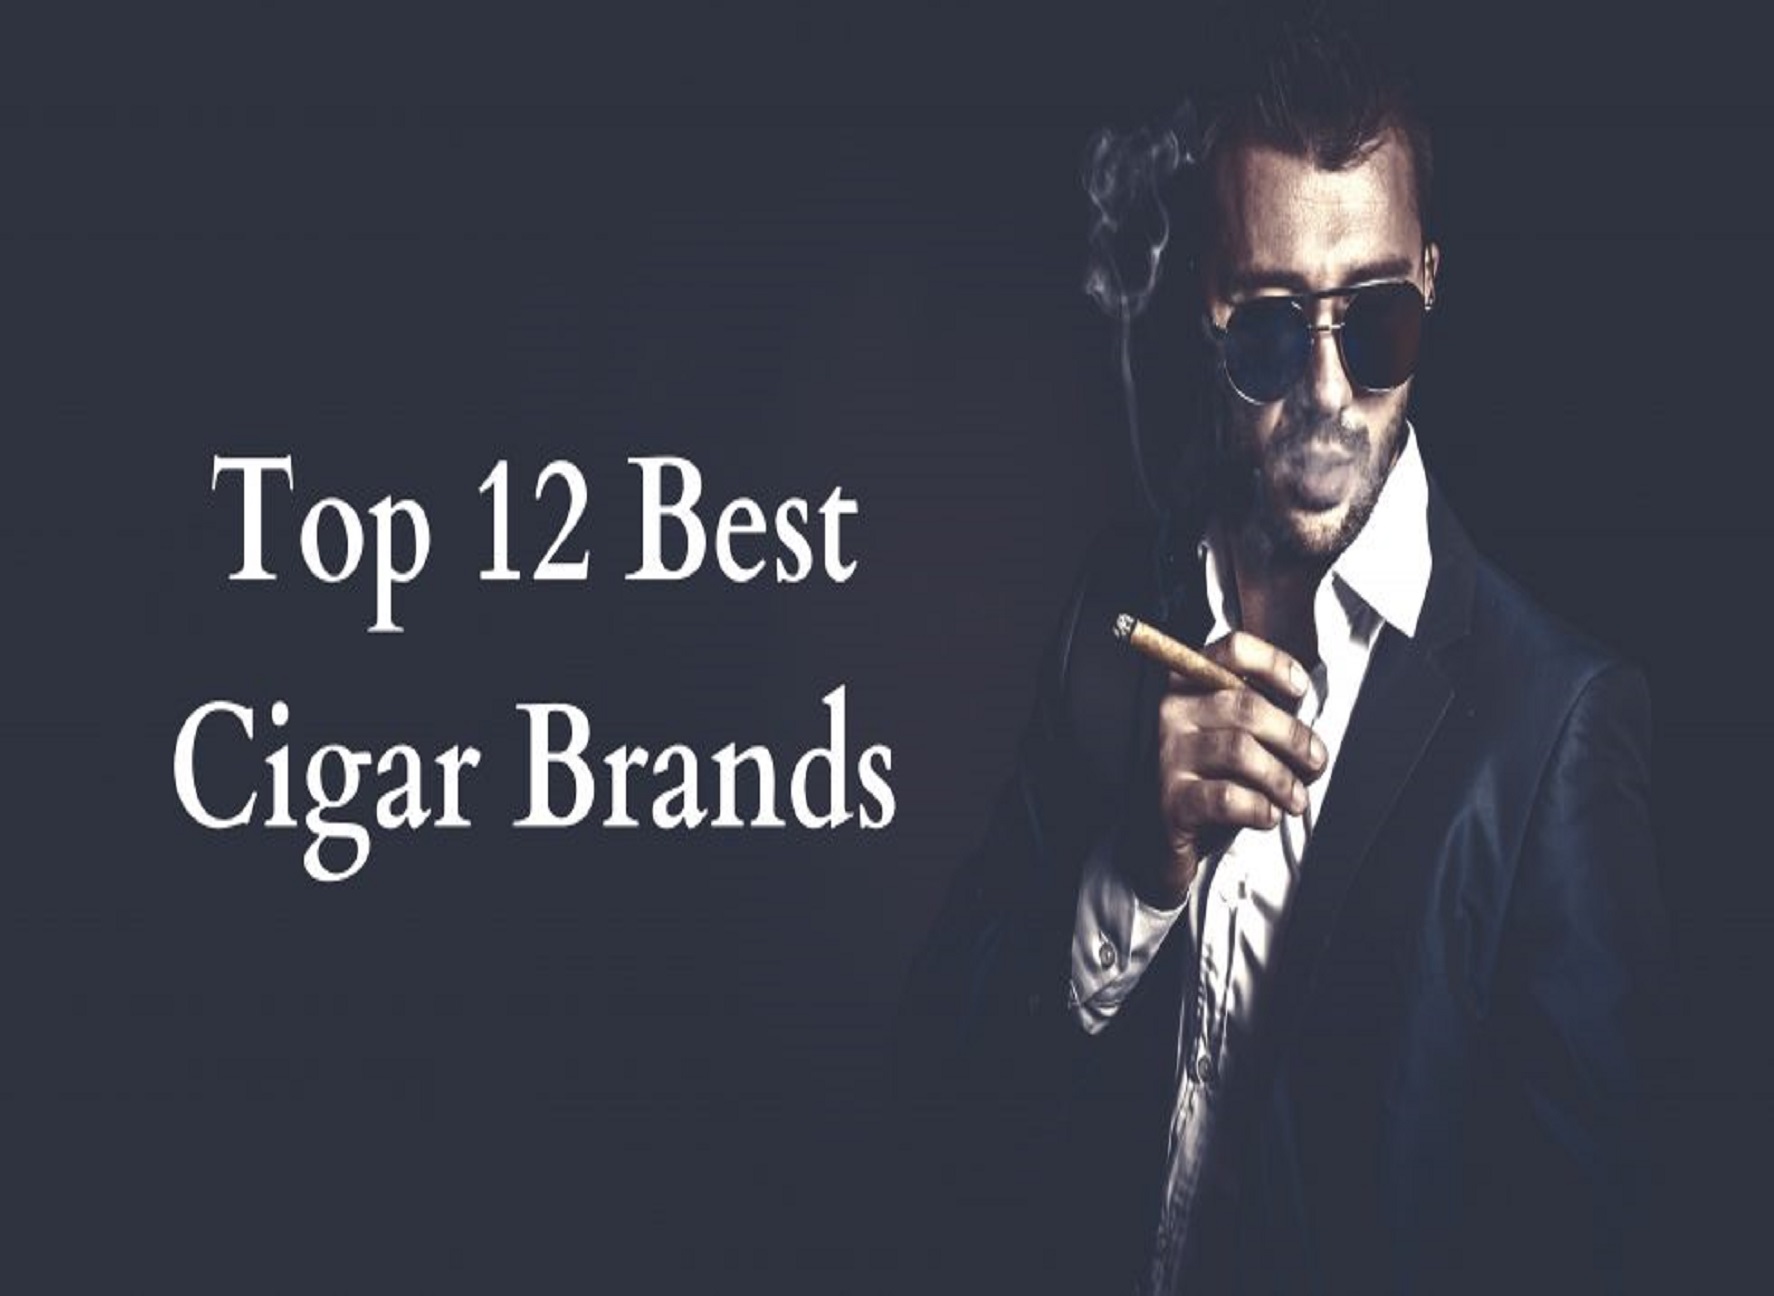 Best-Cigar-Brands-980x490